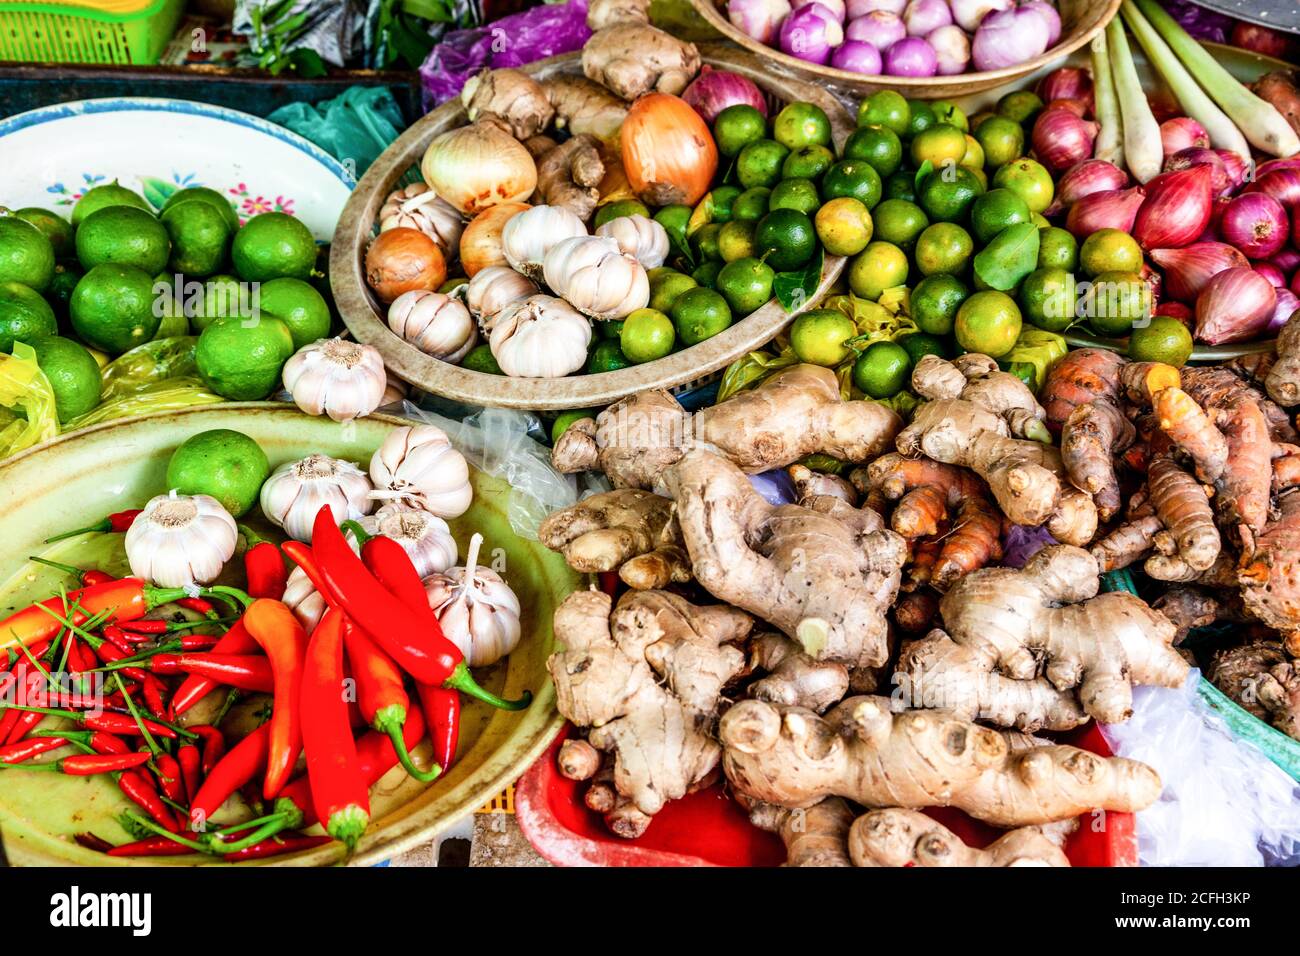 Produits de cuisine asiatique sur le marché alimentaire, Vietnam Banque D'Images